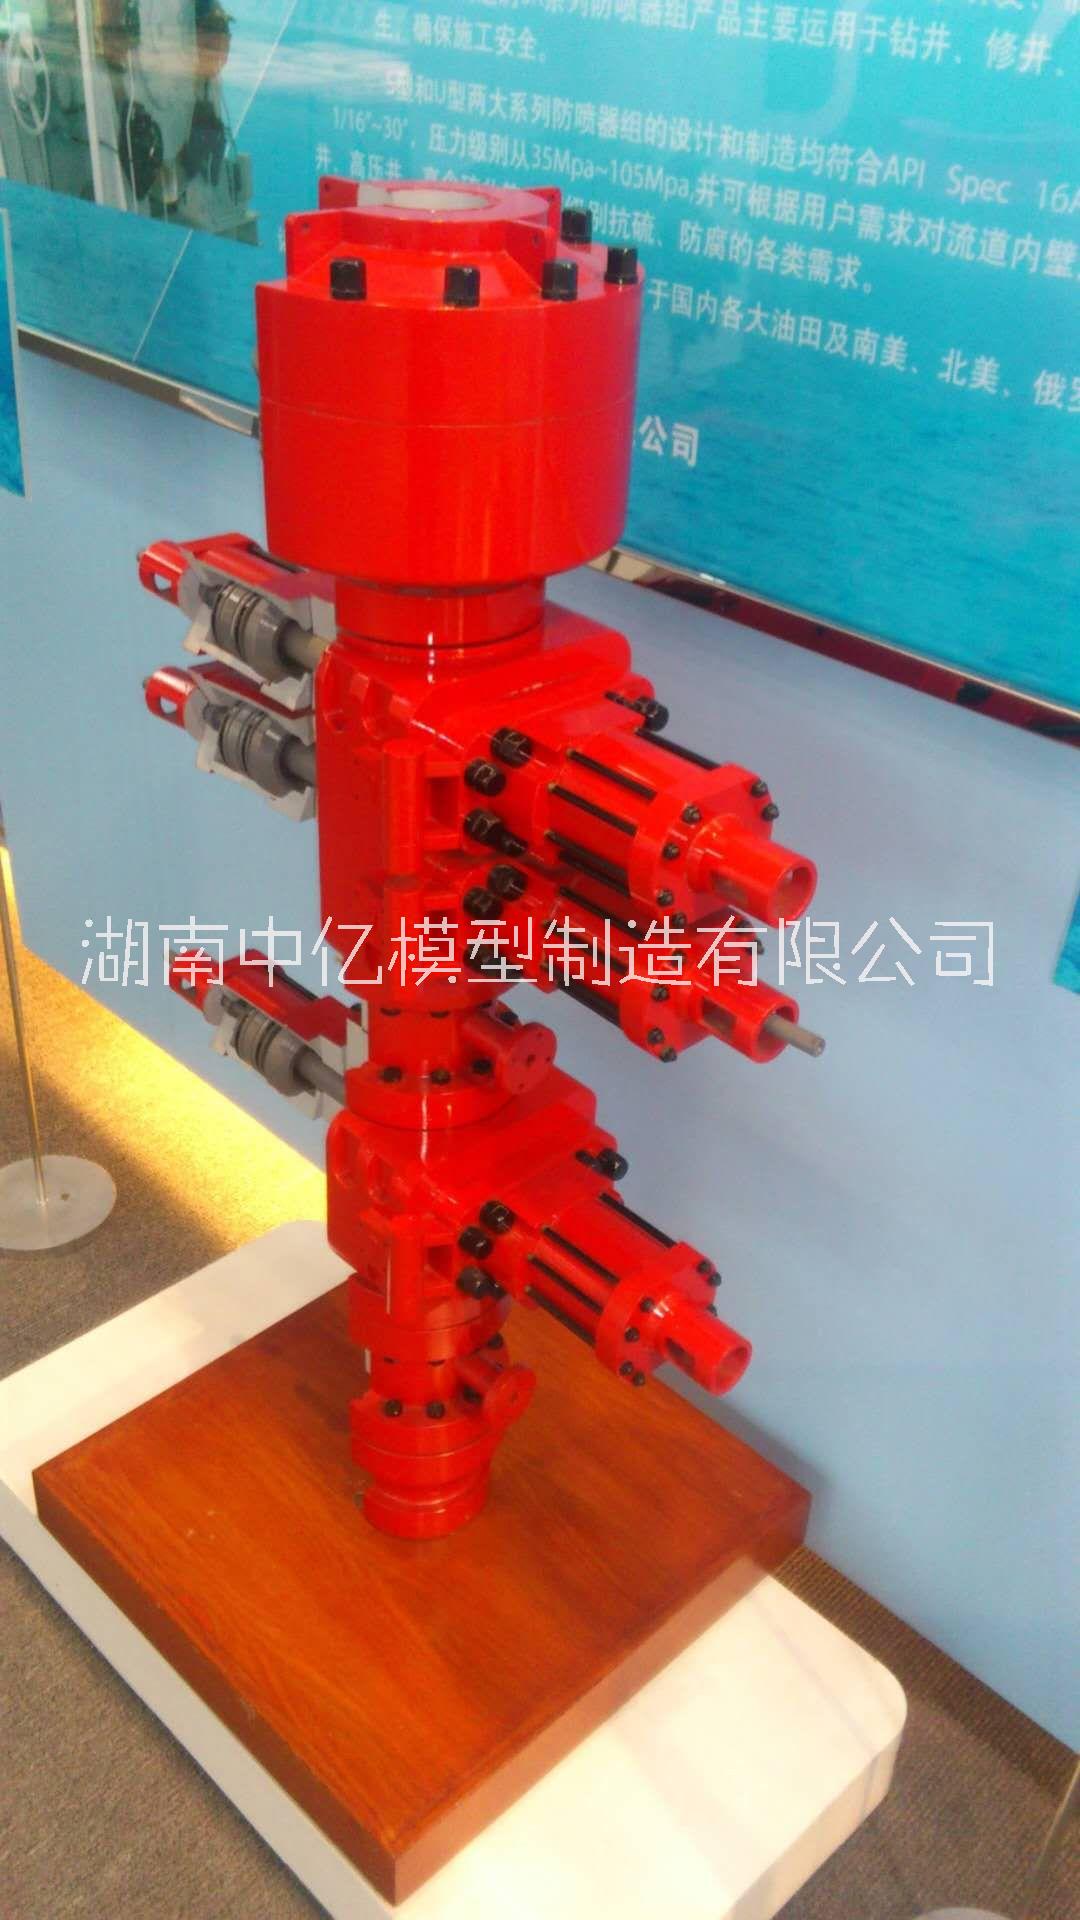 上海定制-防喷器模型、井口装置模型图片